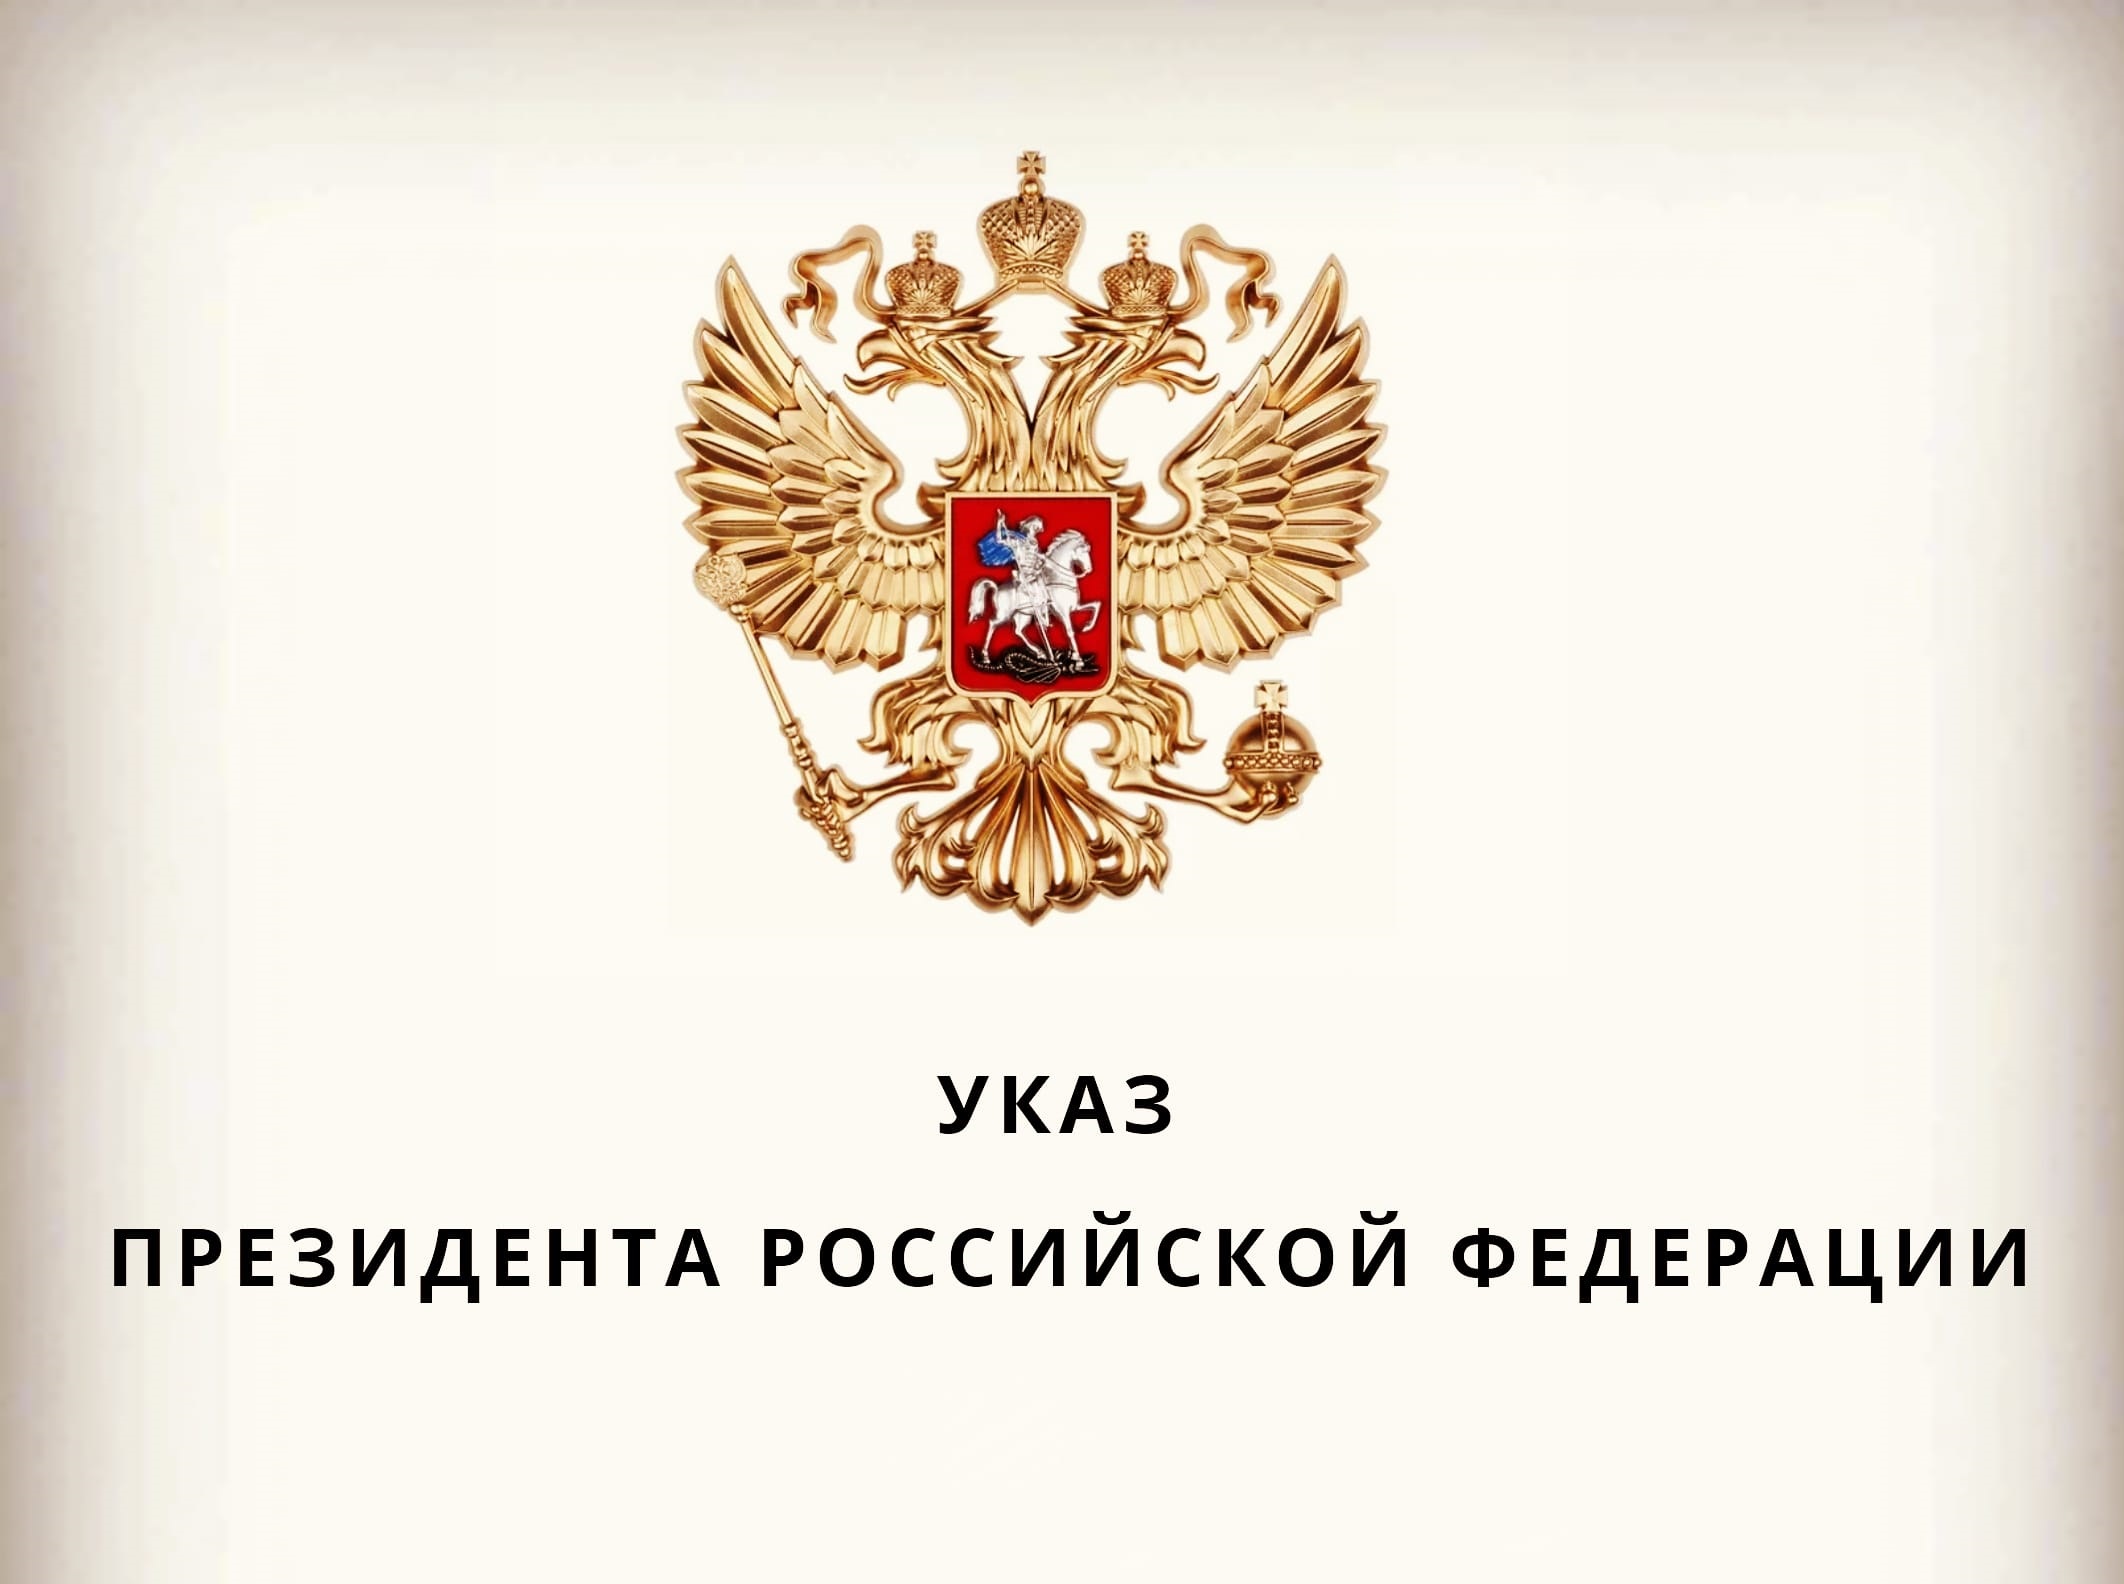 Указ Президента Российской Федерации о порядке въезда в Российскую Федерацию и выезда из Российской Федерации граждан Украины.